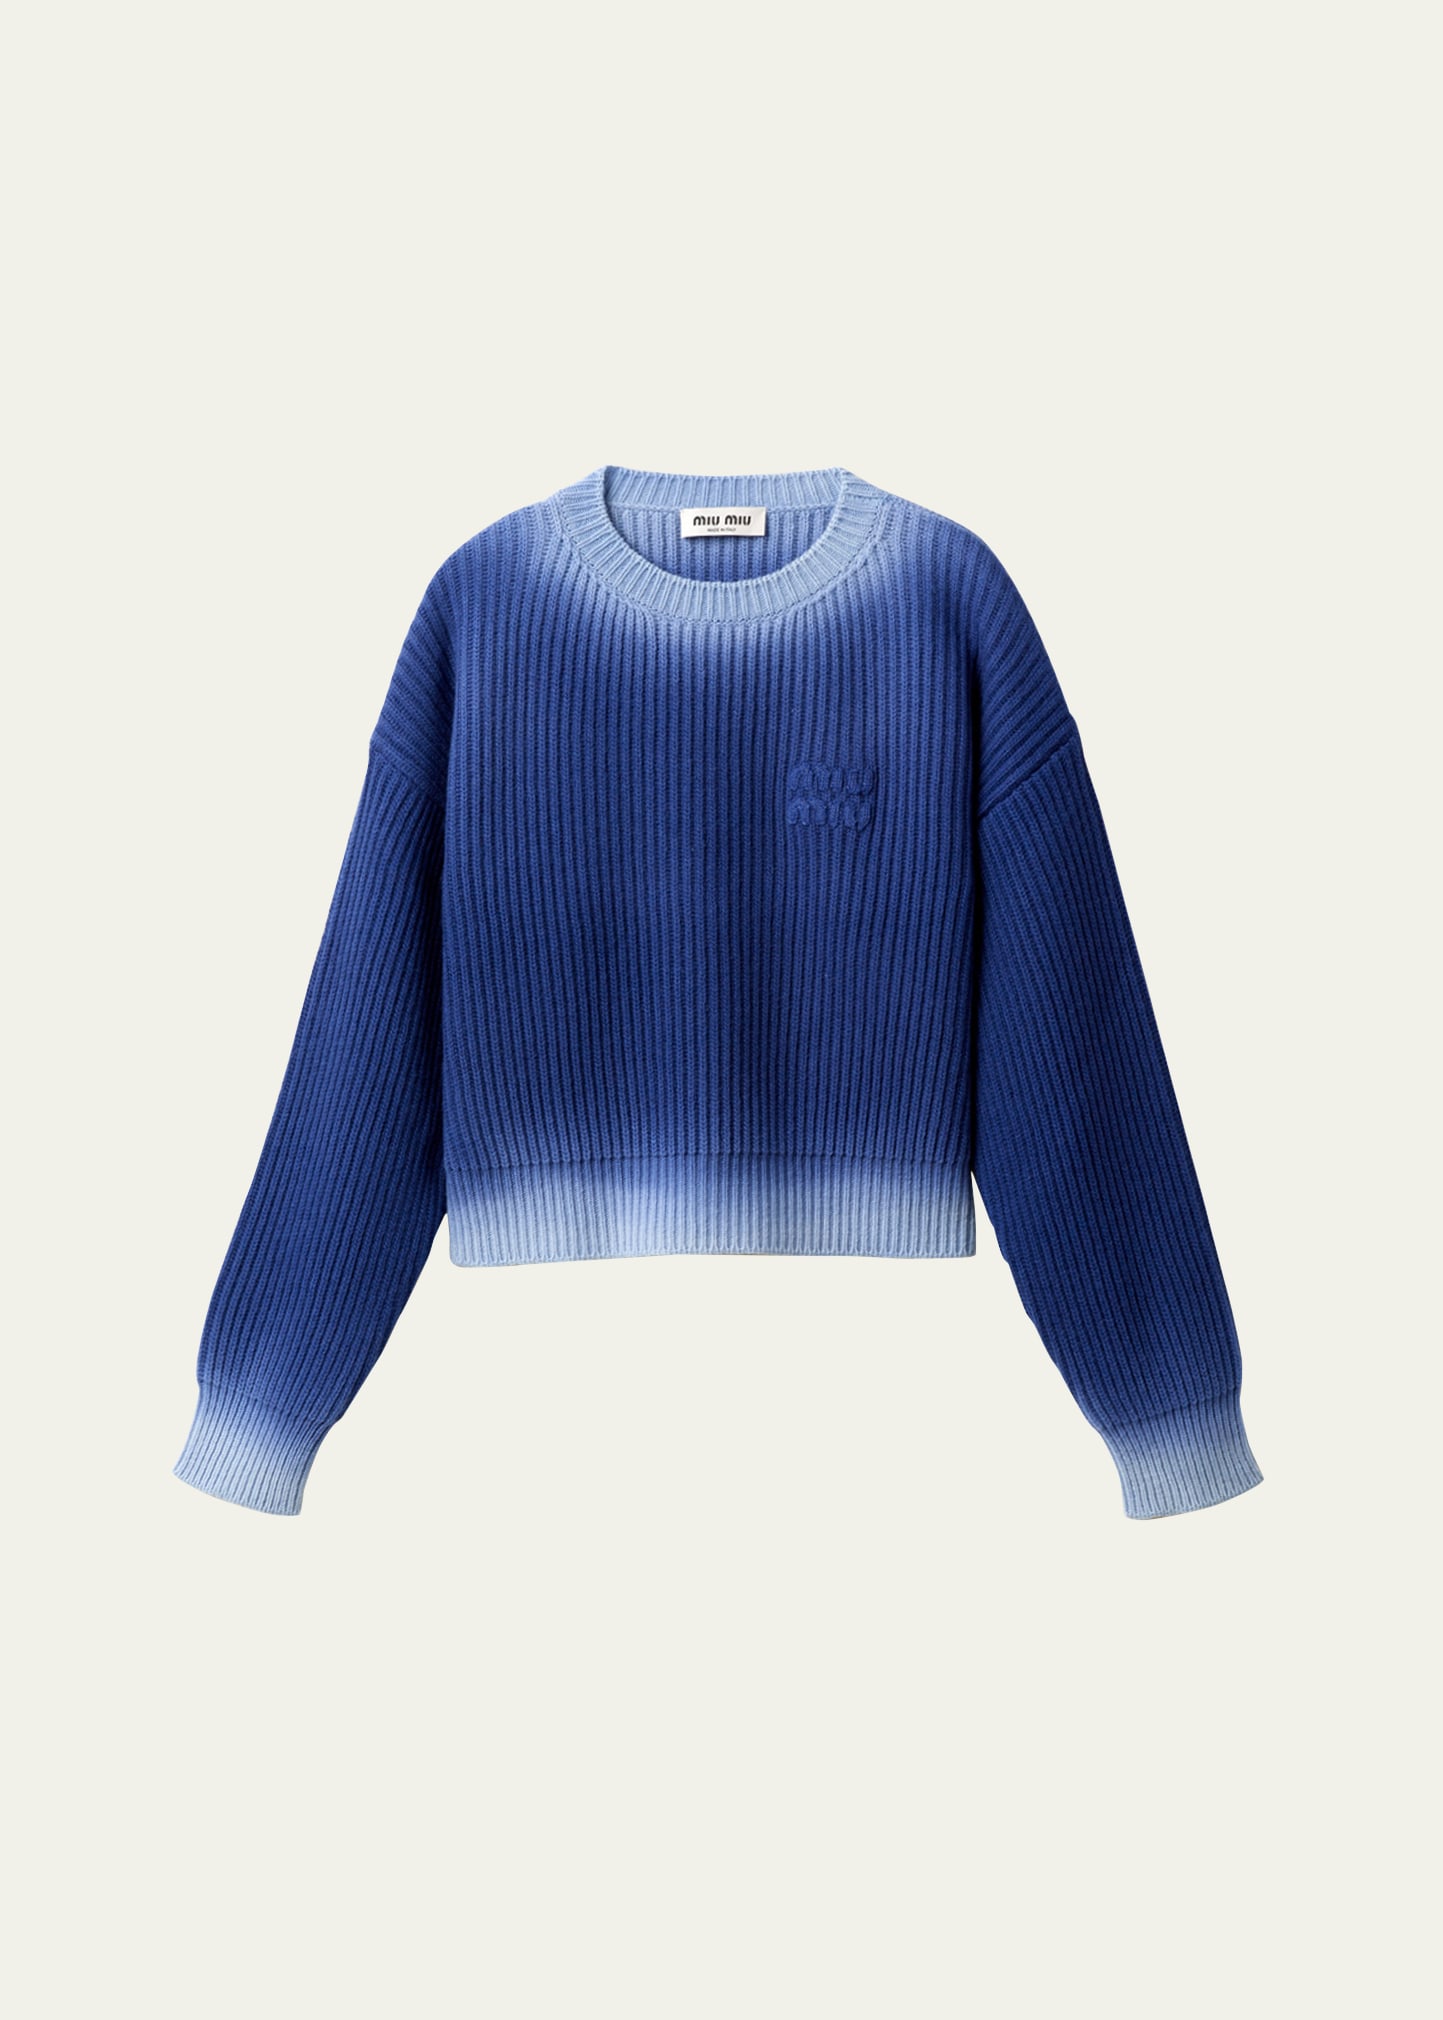 Miu Miu Wool Sweater In F0589 Indaco